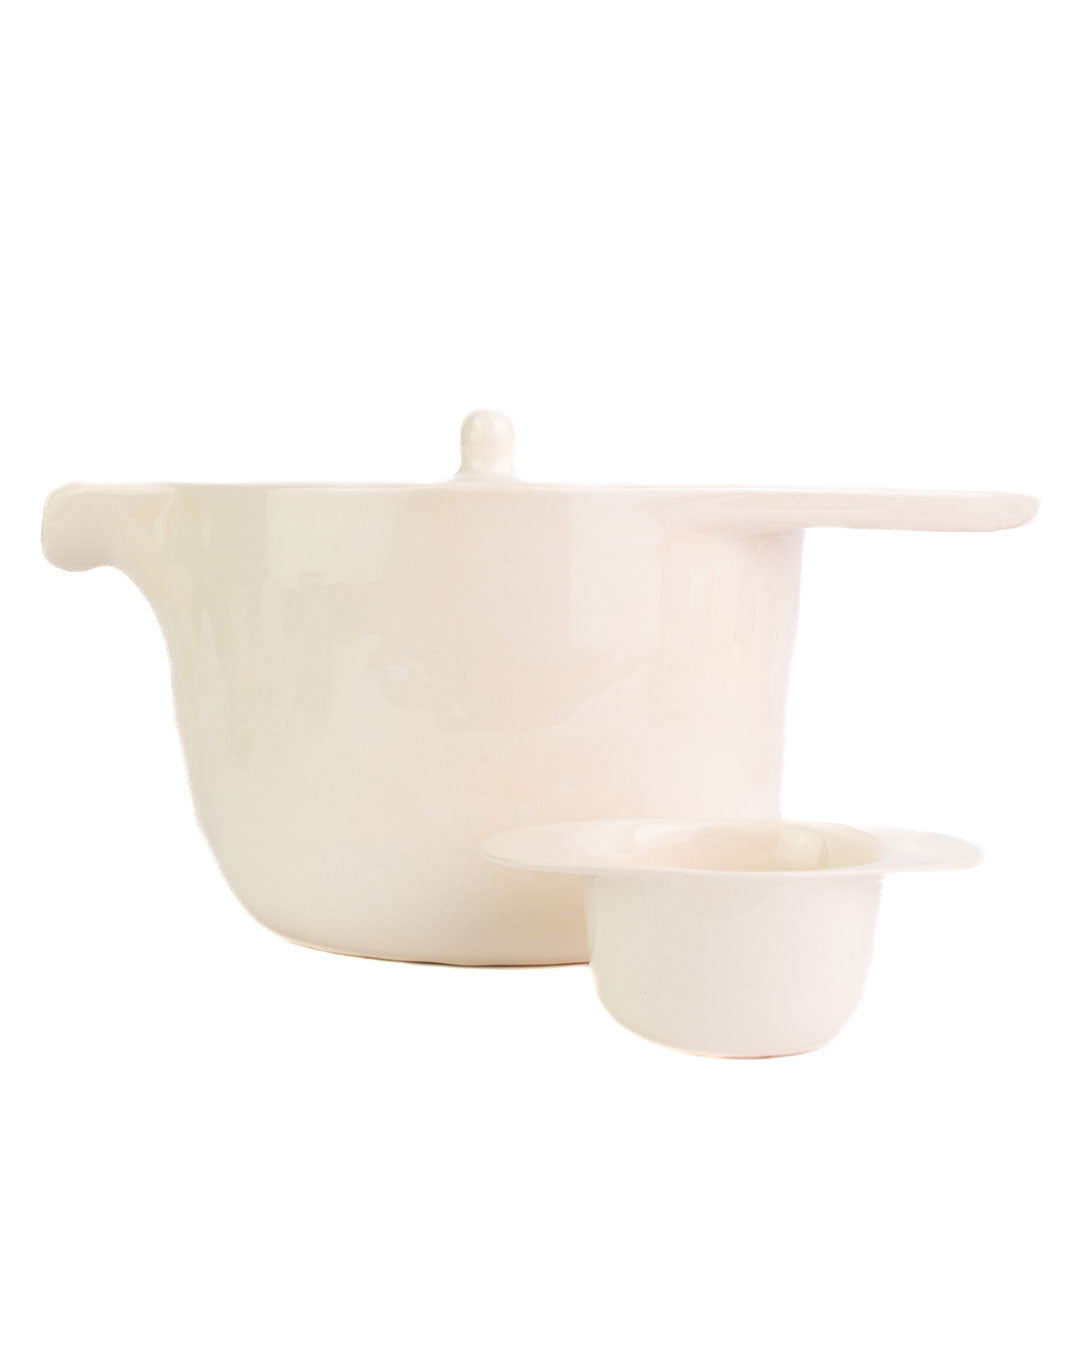 Ameno Tea Pot with Strainer white_pottery_nu ceramica